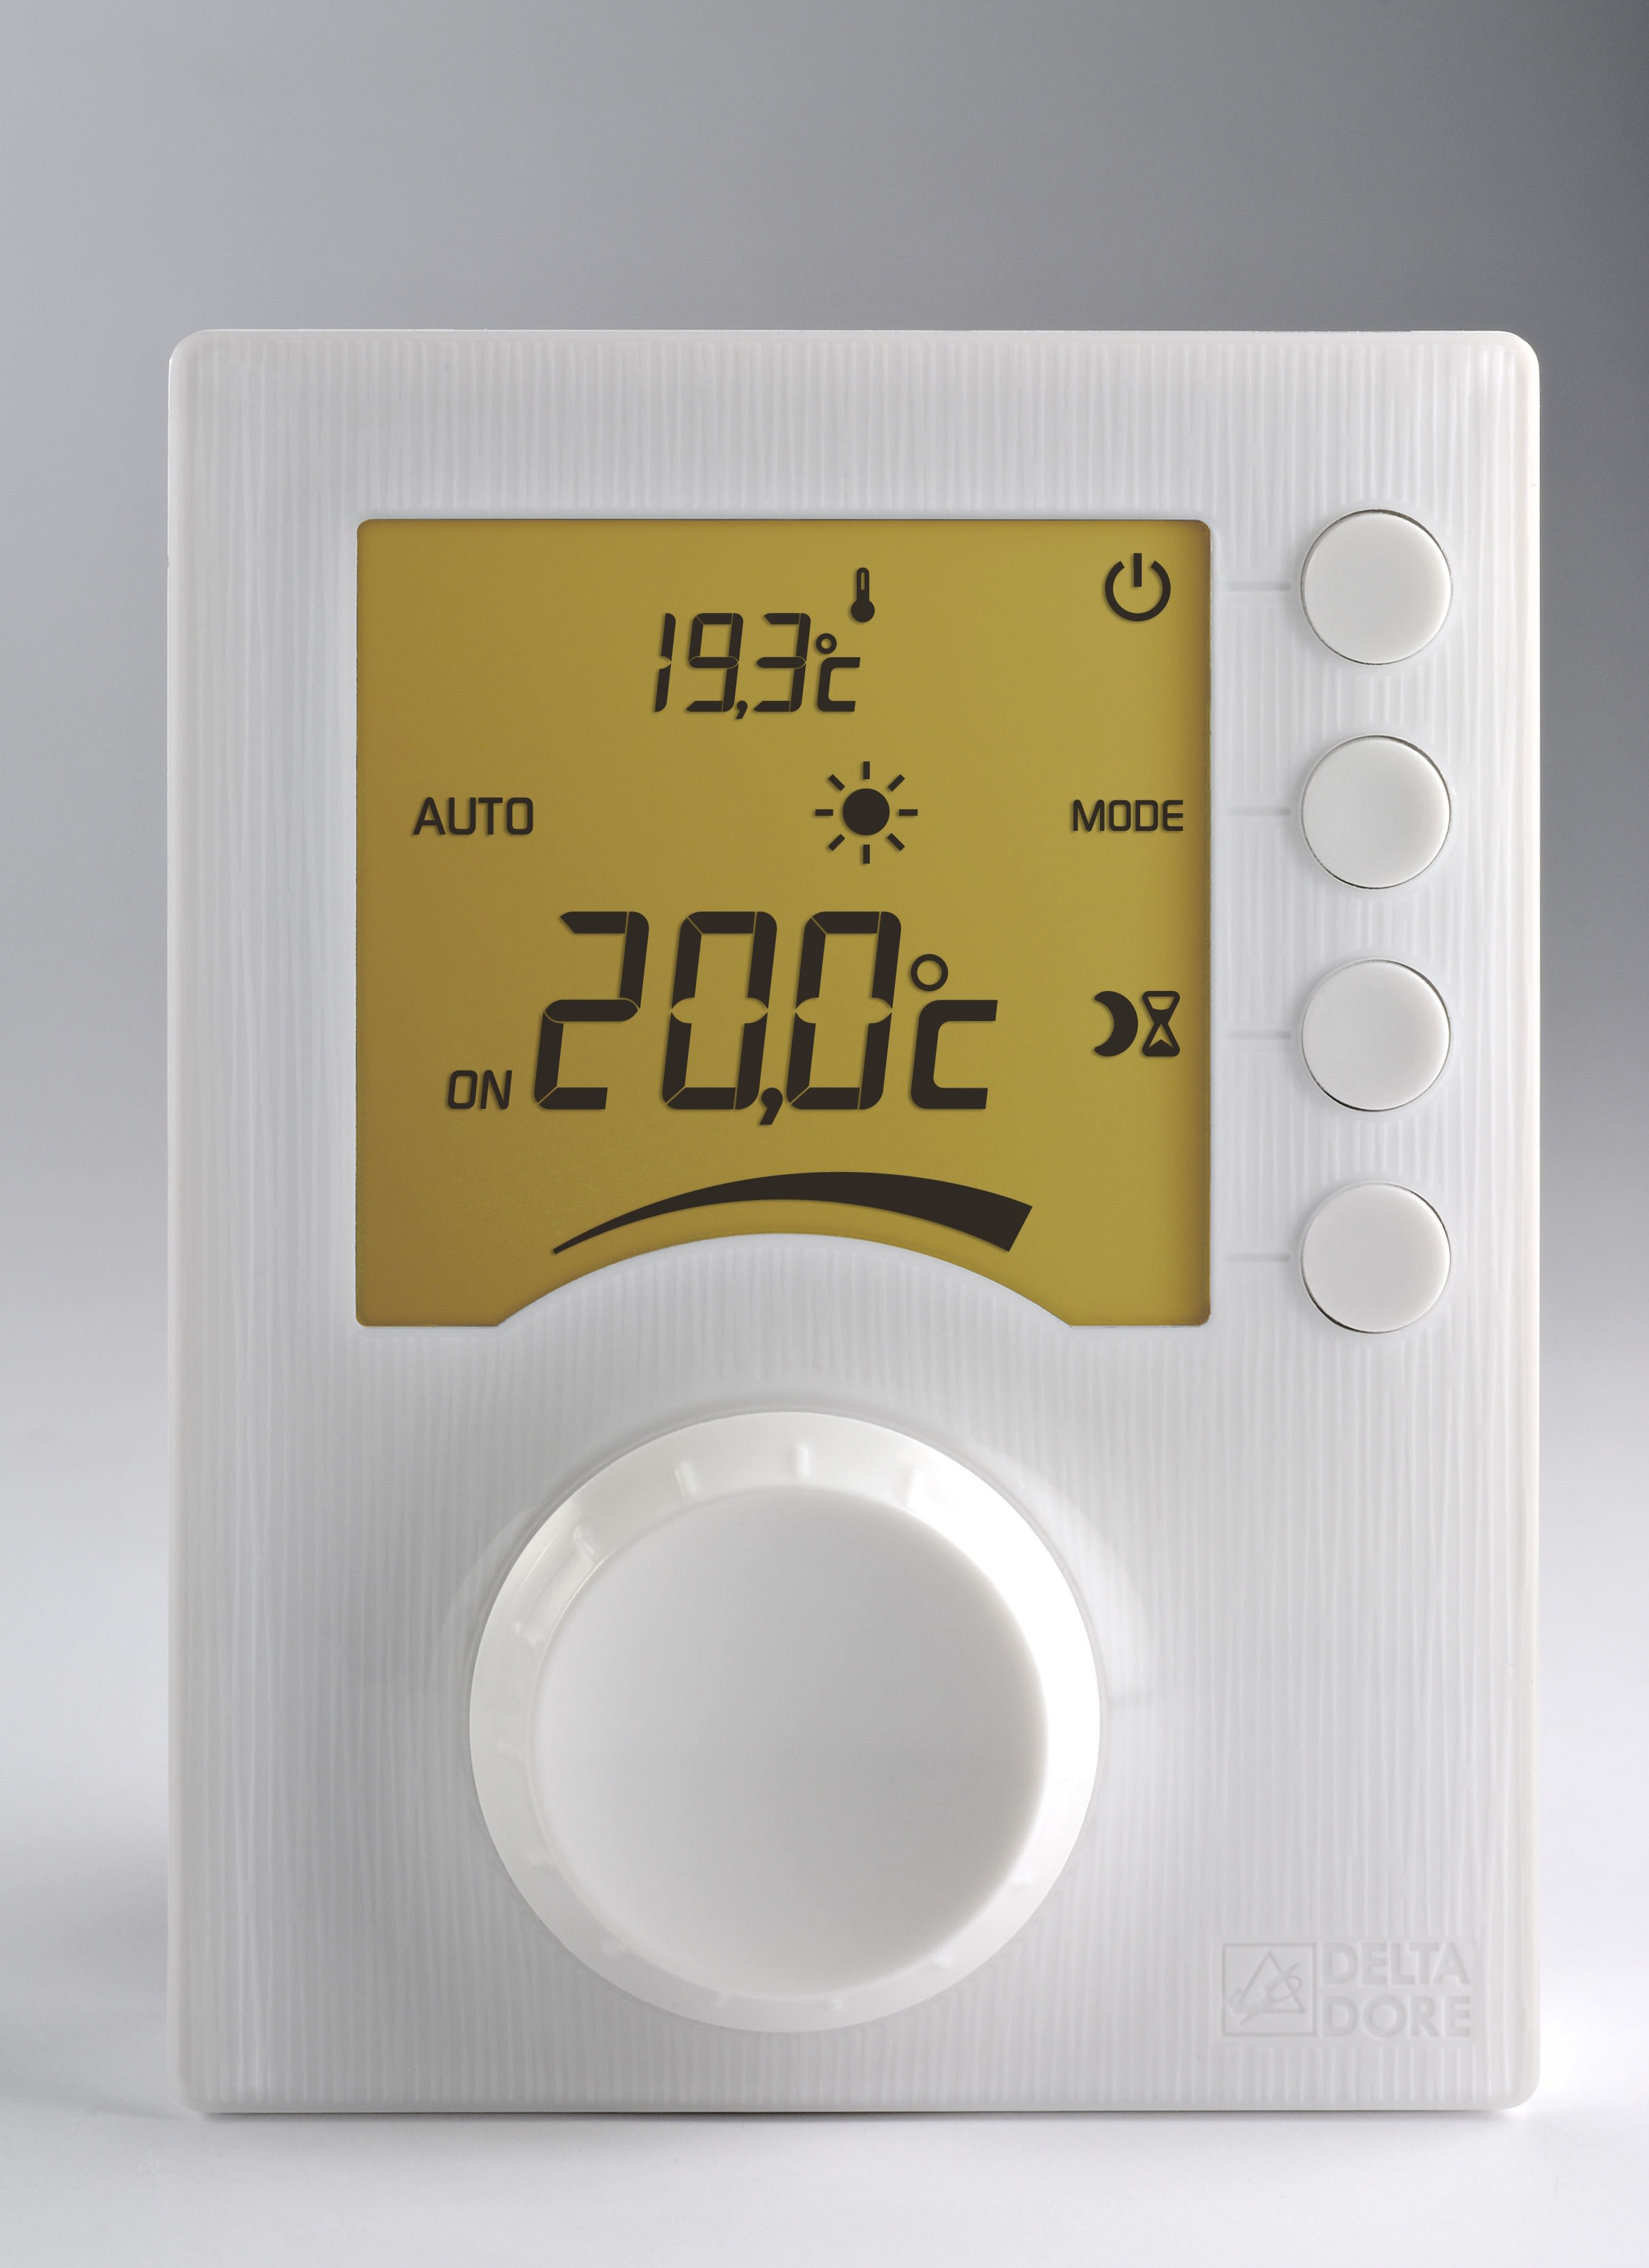 Delta Dore TYBOX 2300 Wireless Thermostat